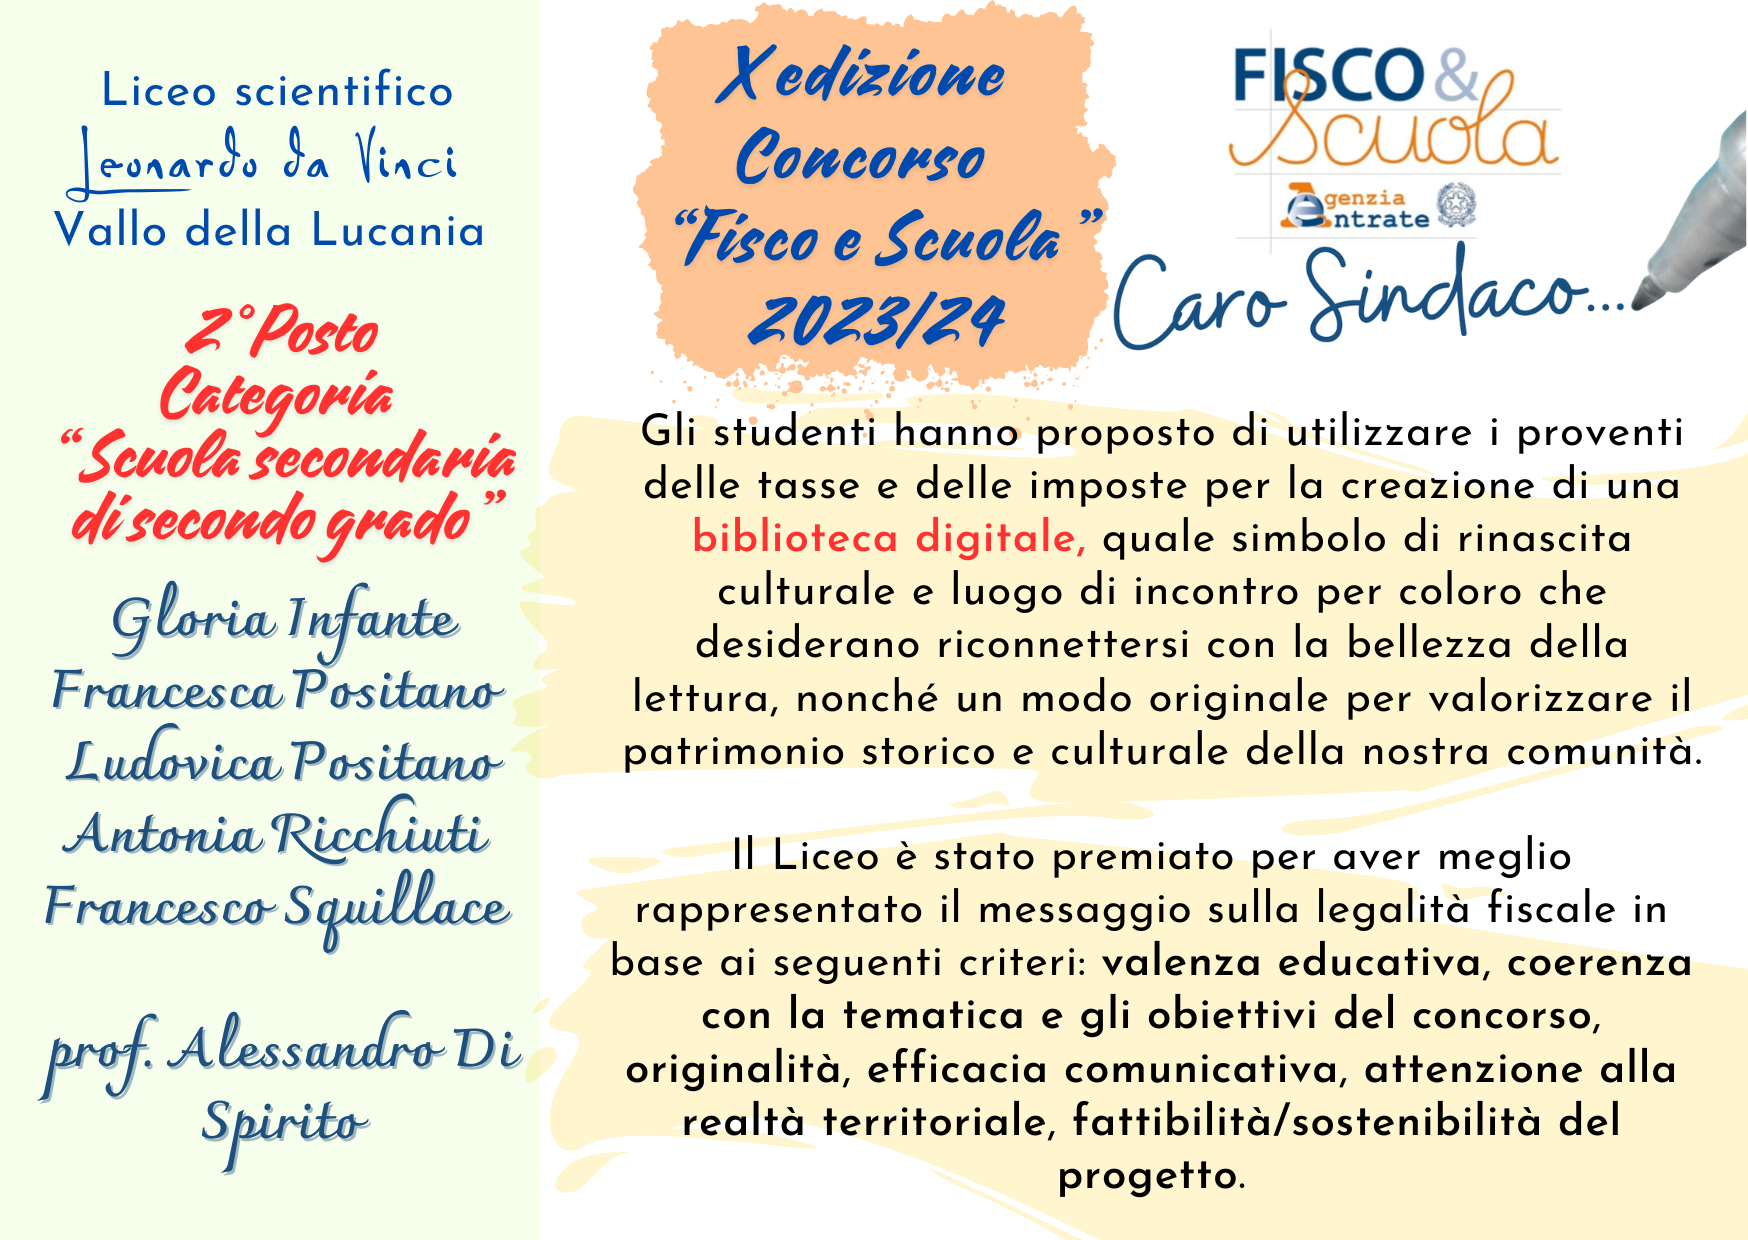 Fisco & Scuola